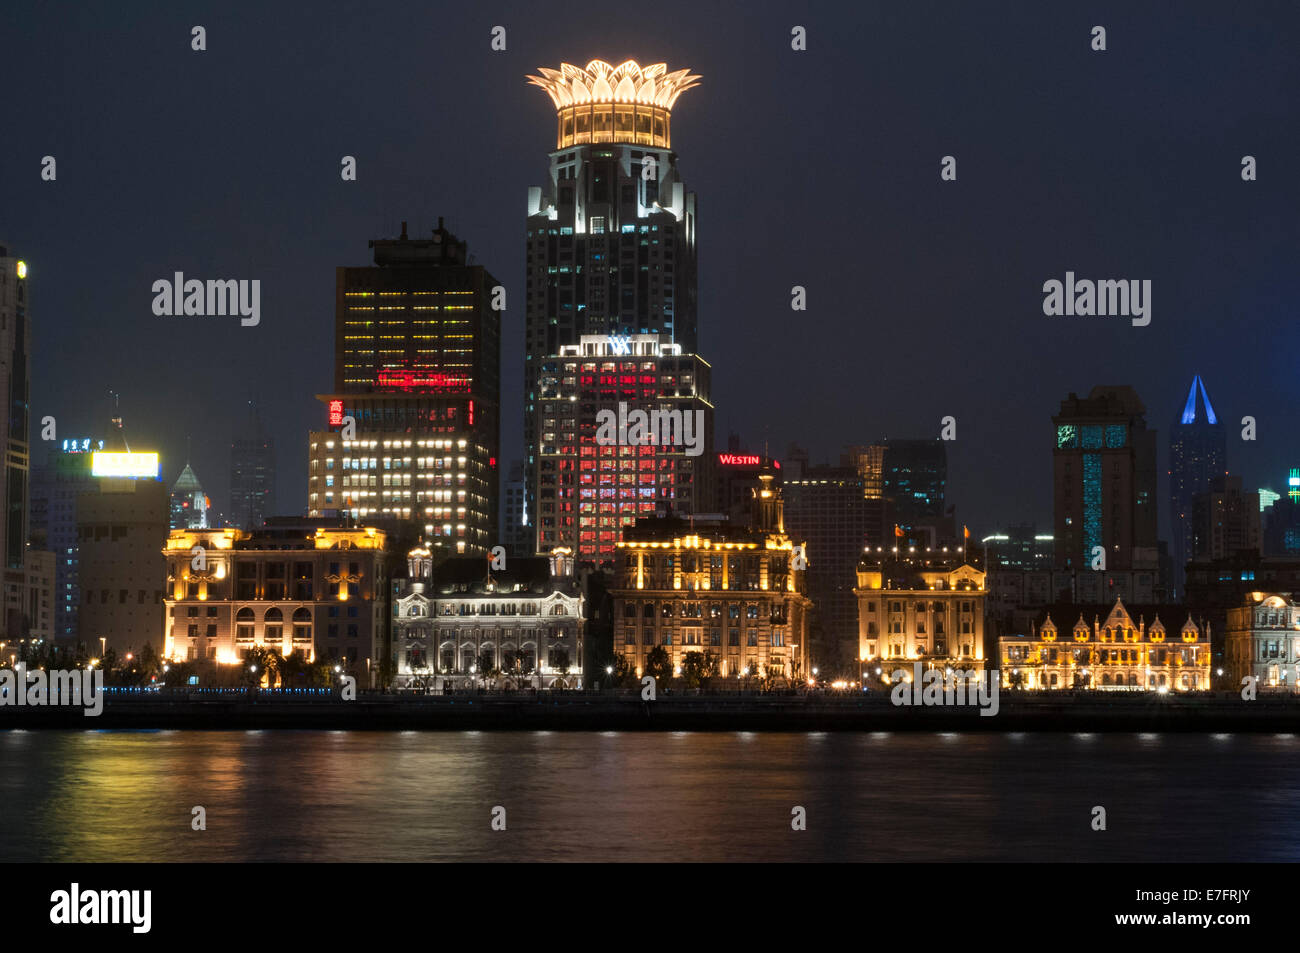 Le Bund sur la nuit et la rivière Huangpu. La promenade du Bund, Shanghai, Chine. Chine Shanghai Shanghai Skyline vue touristique Banque D'Images